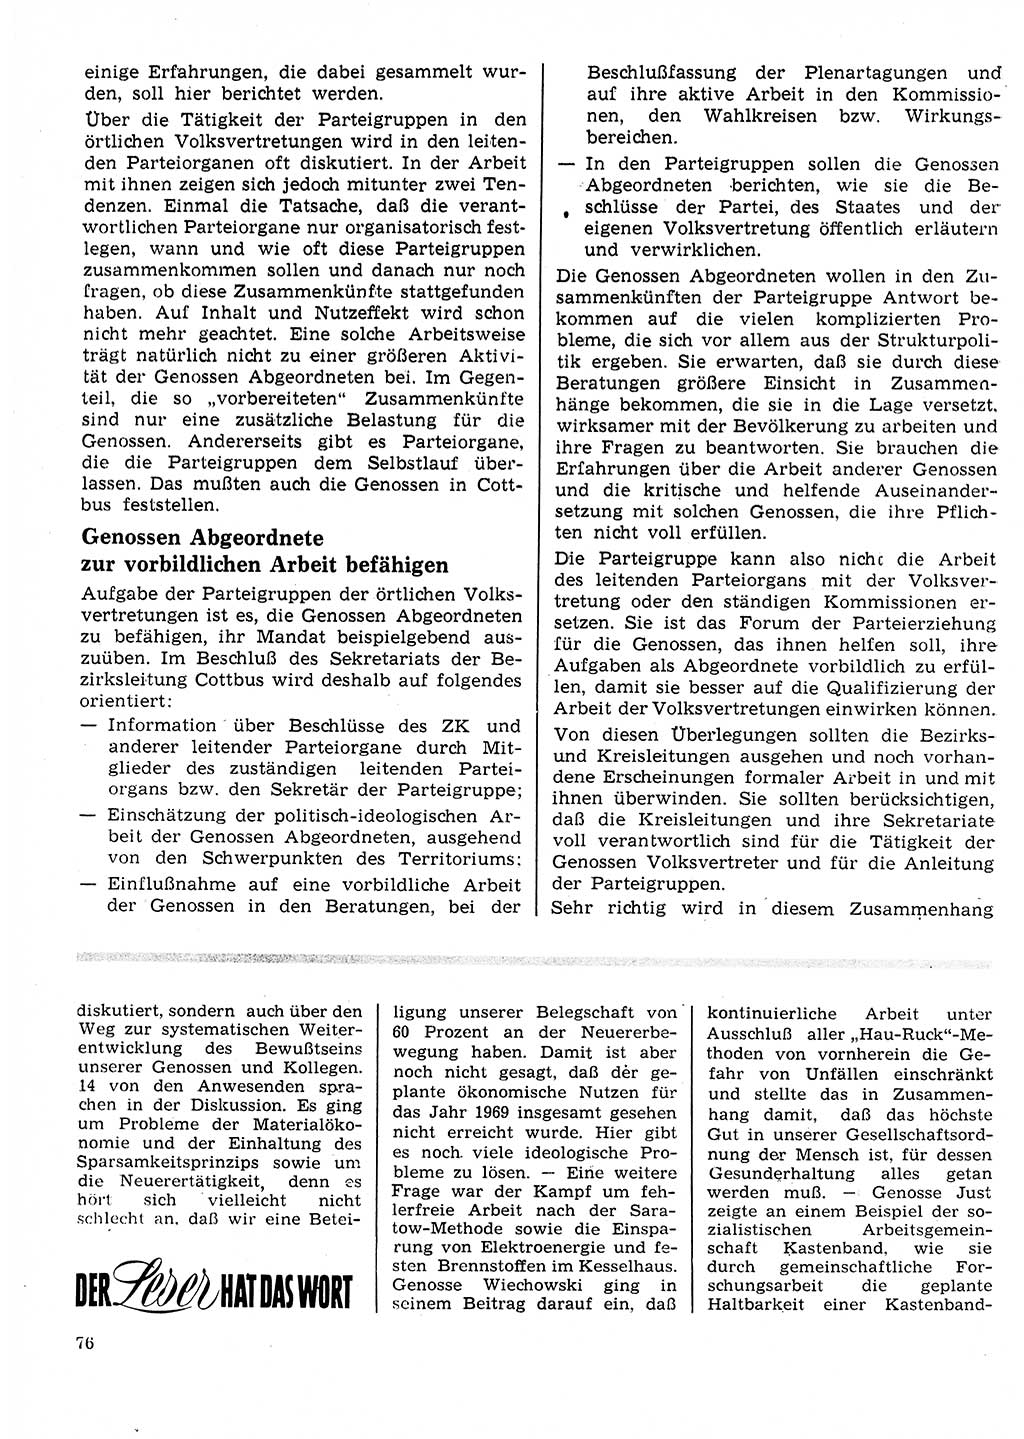 Neuer Weg (NW), Organ des Zentralkomitees (ZK) der SED (Sozialistische Einheitspartei Deutschlands) für Fragen des Parteilebens, 25. Jahrgang [Deutsche Demokratische Republik (DDR)] 1970, Seite 76 (NW ZK SED DDR 1970, S. 76)